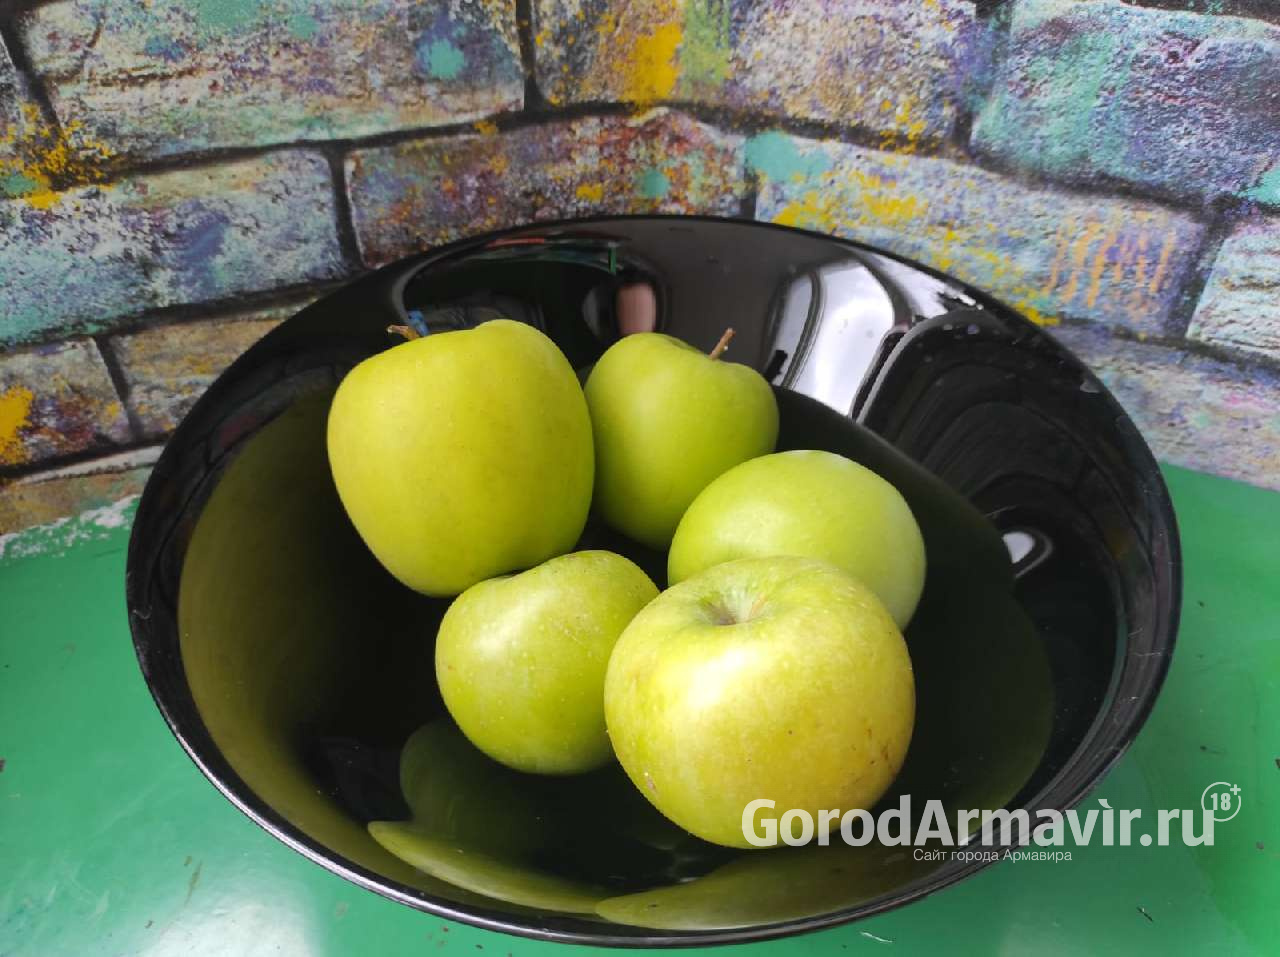 В Армавире самые низкие цены на яблоки 